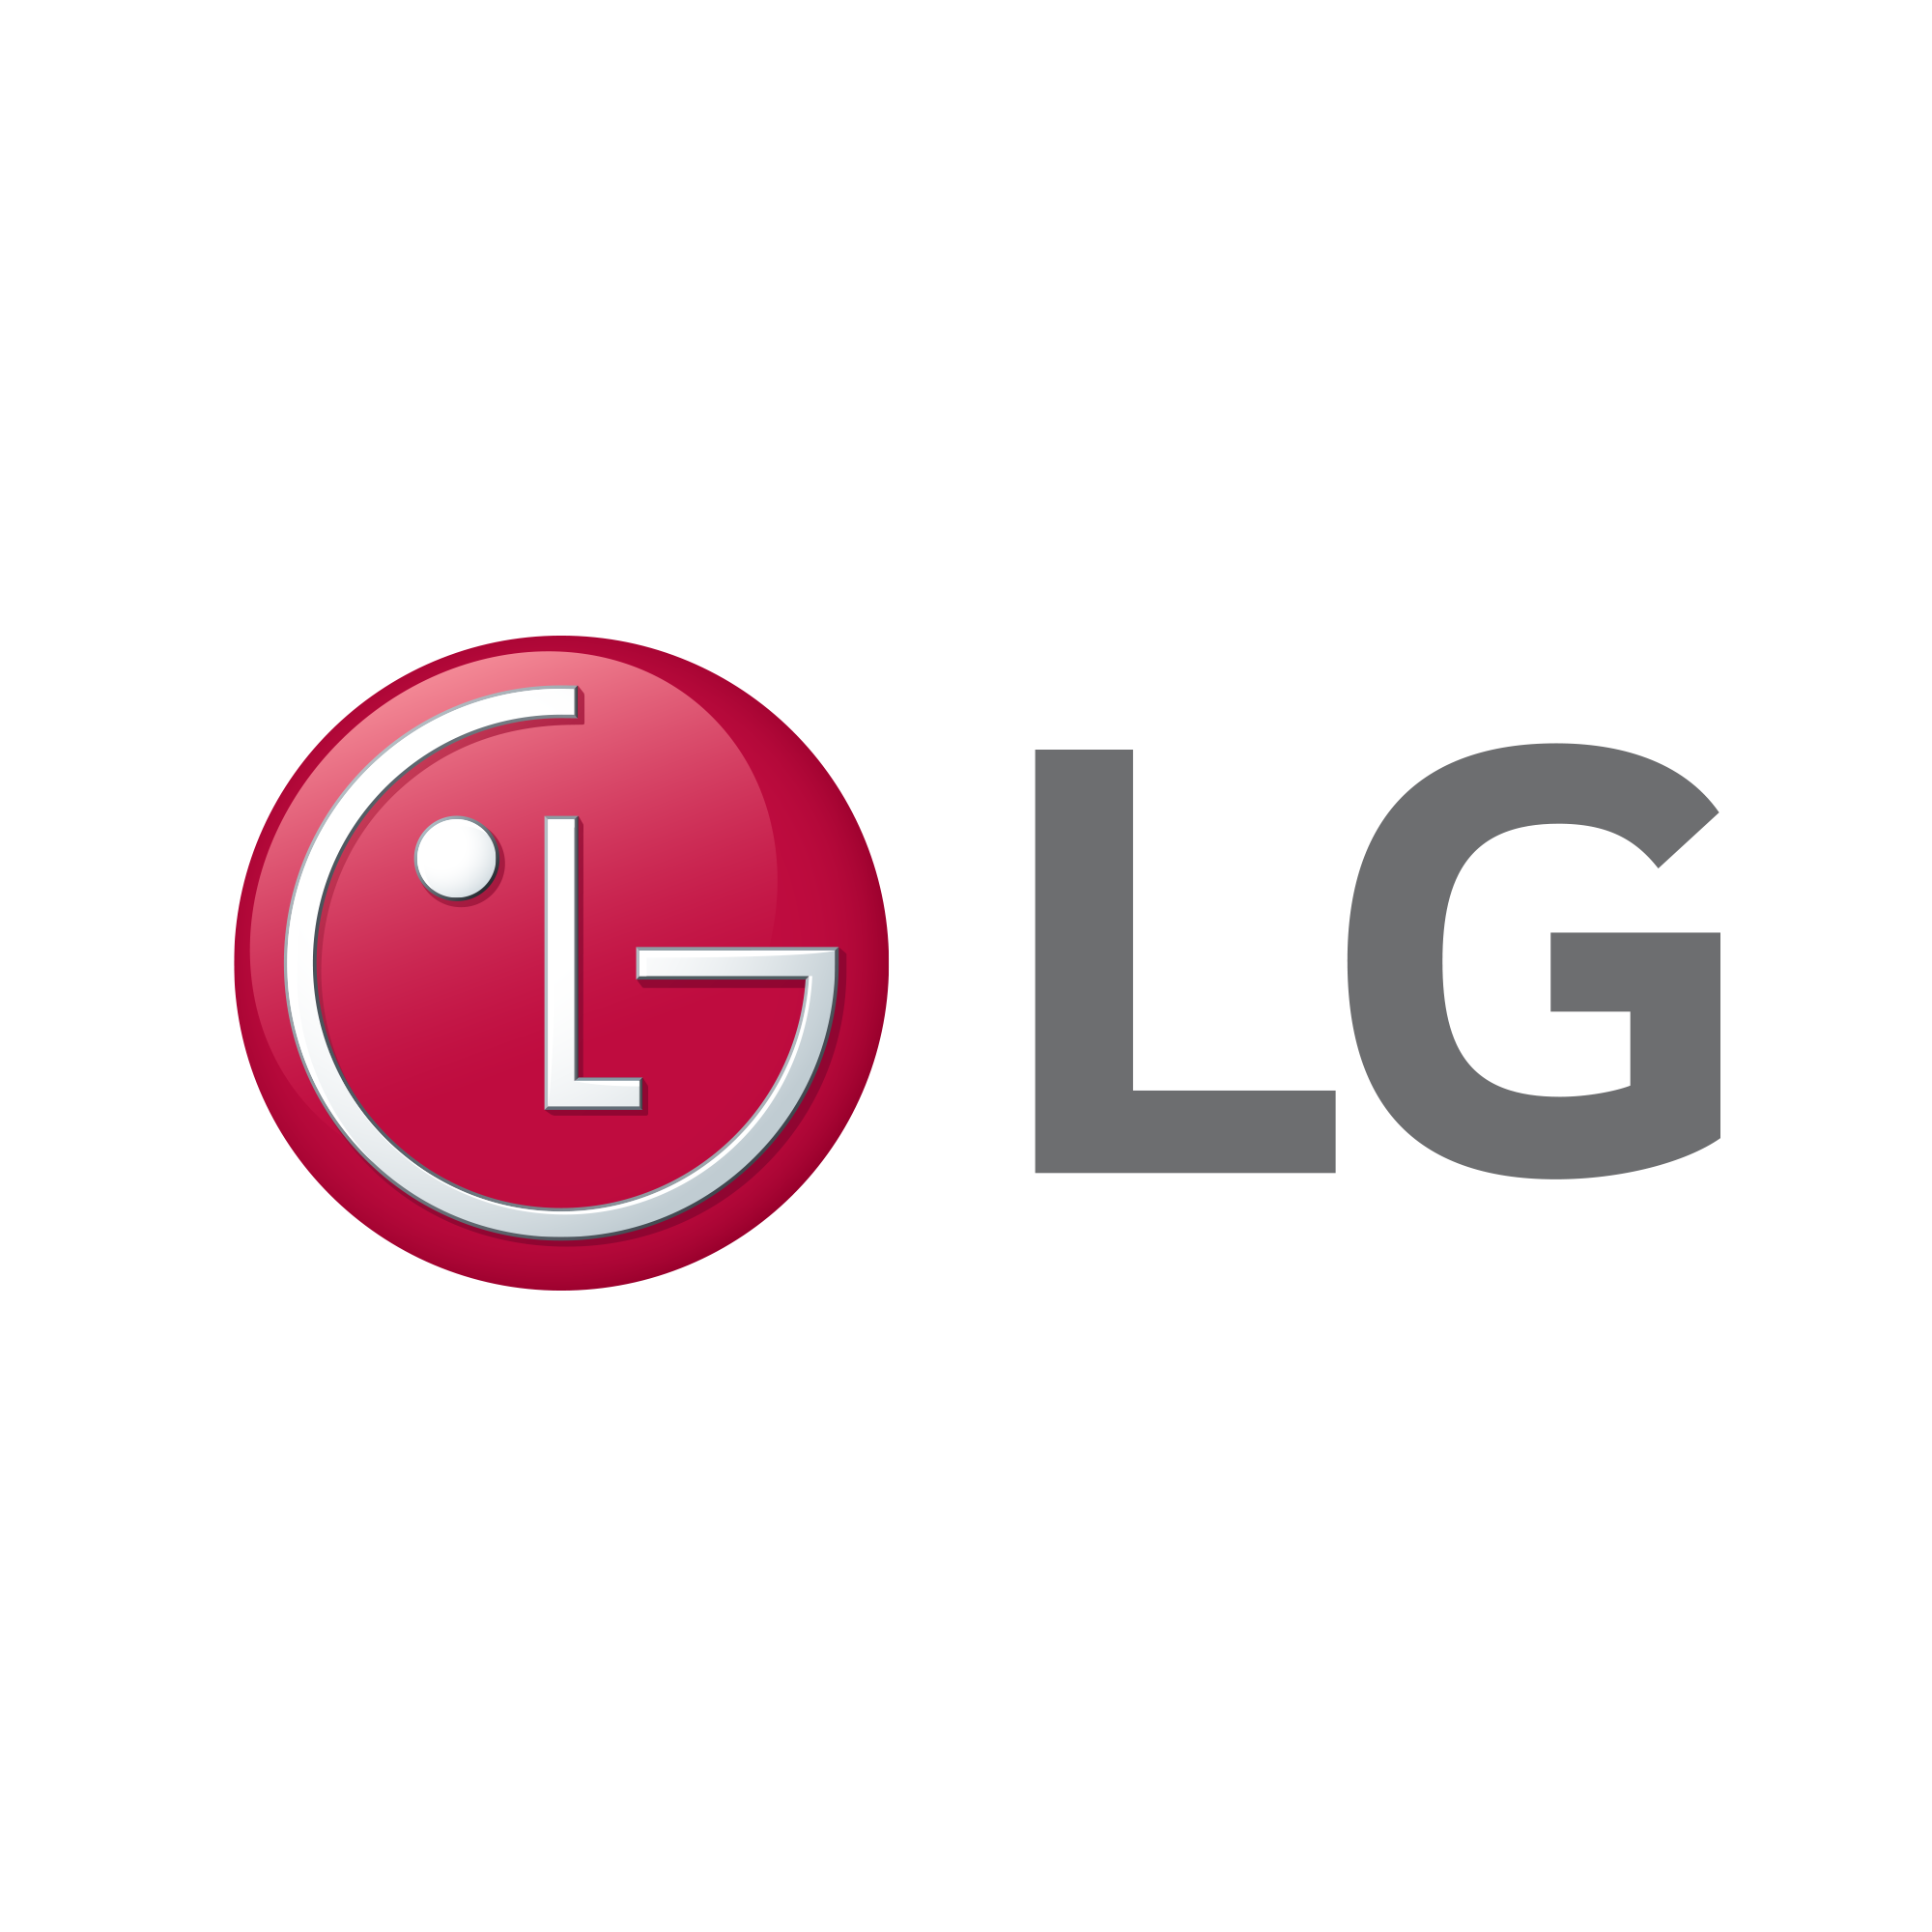 LG V3RT8N Trockner mit Dual Inverter Wärmepumpentechnologie | Automatisch  selbstreinigender Kondensator | 8 kg Fassungsvermögen | Wi-Fi-Funktion |  Energieeffizienzklasse A++ | LG V3RT8N